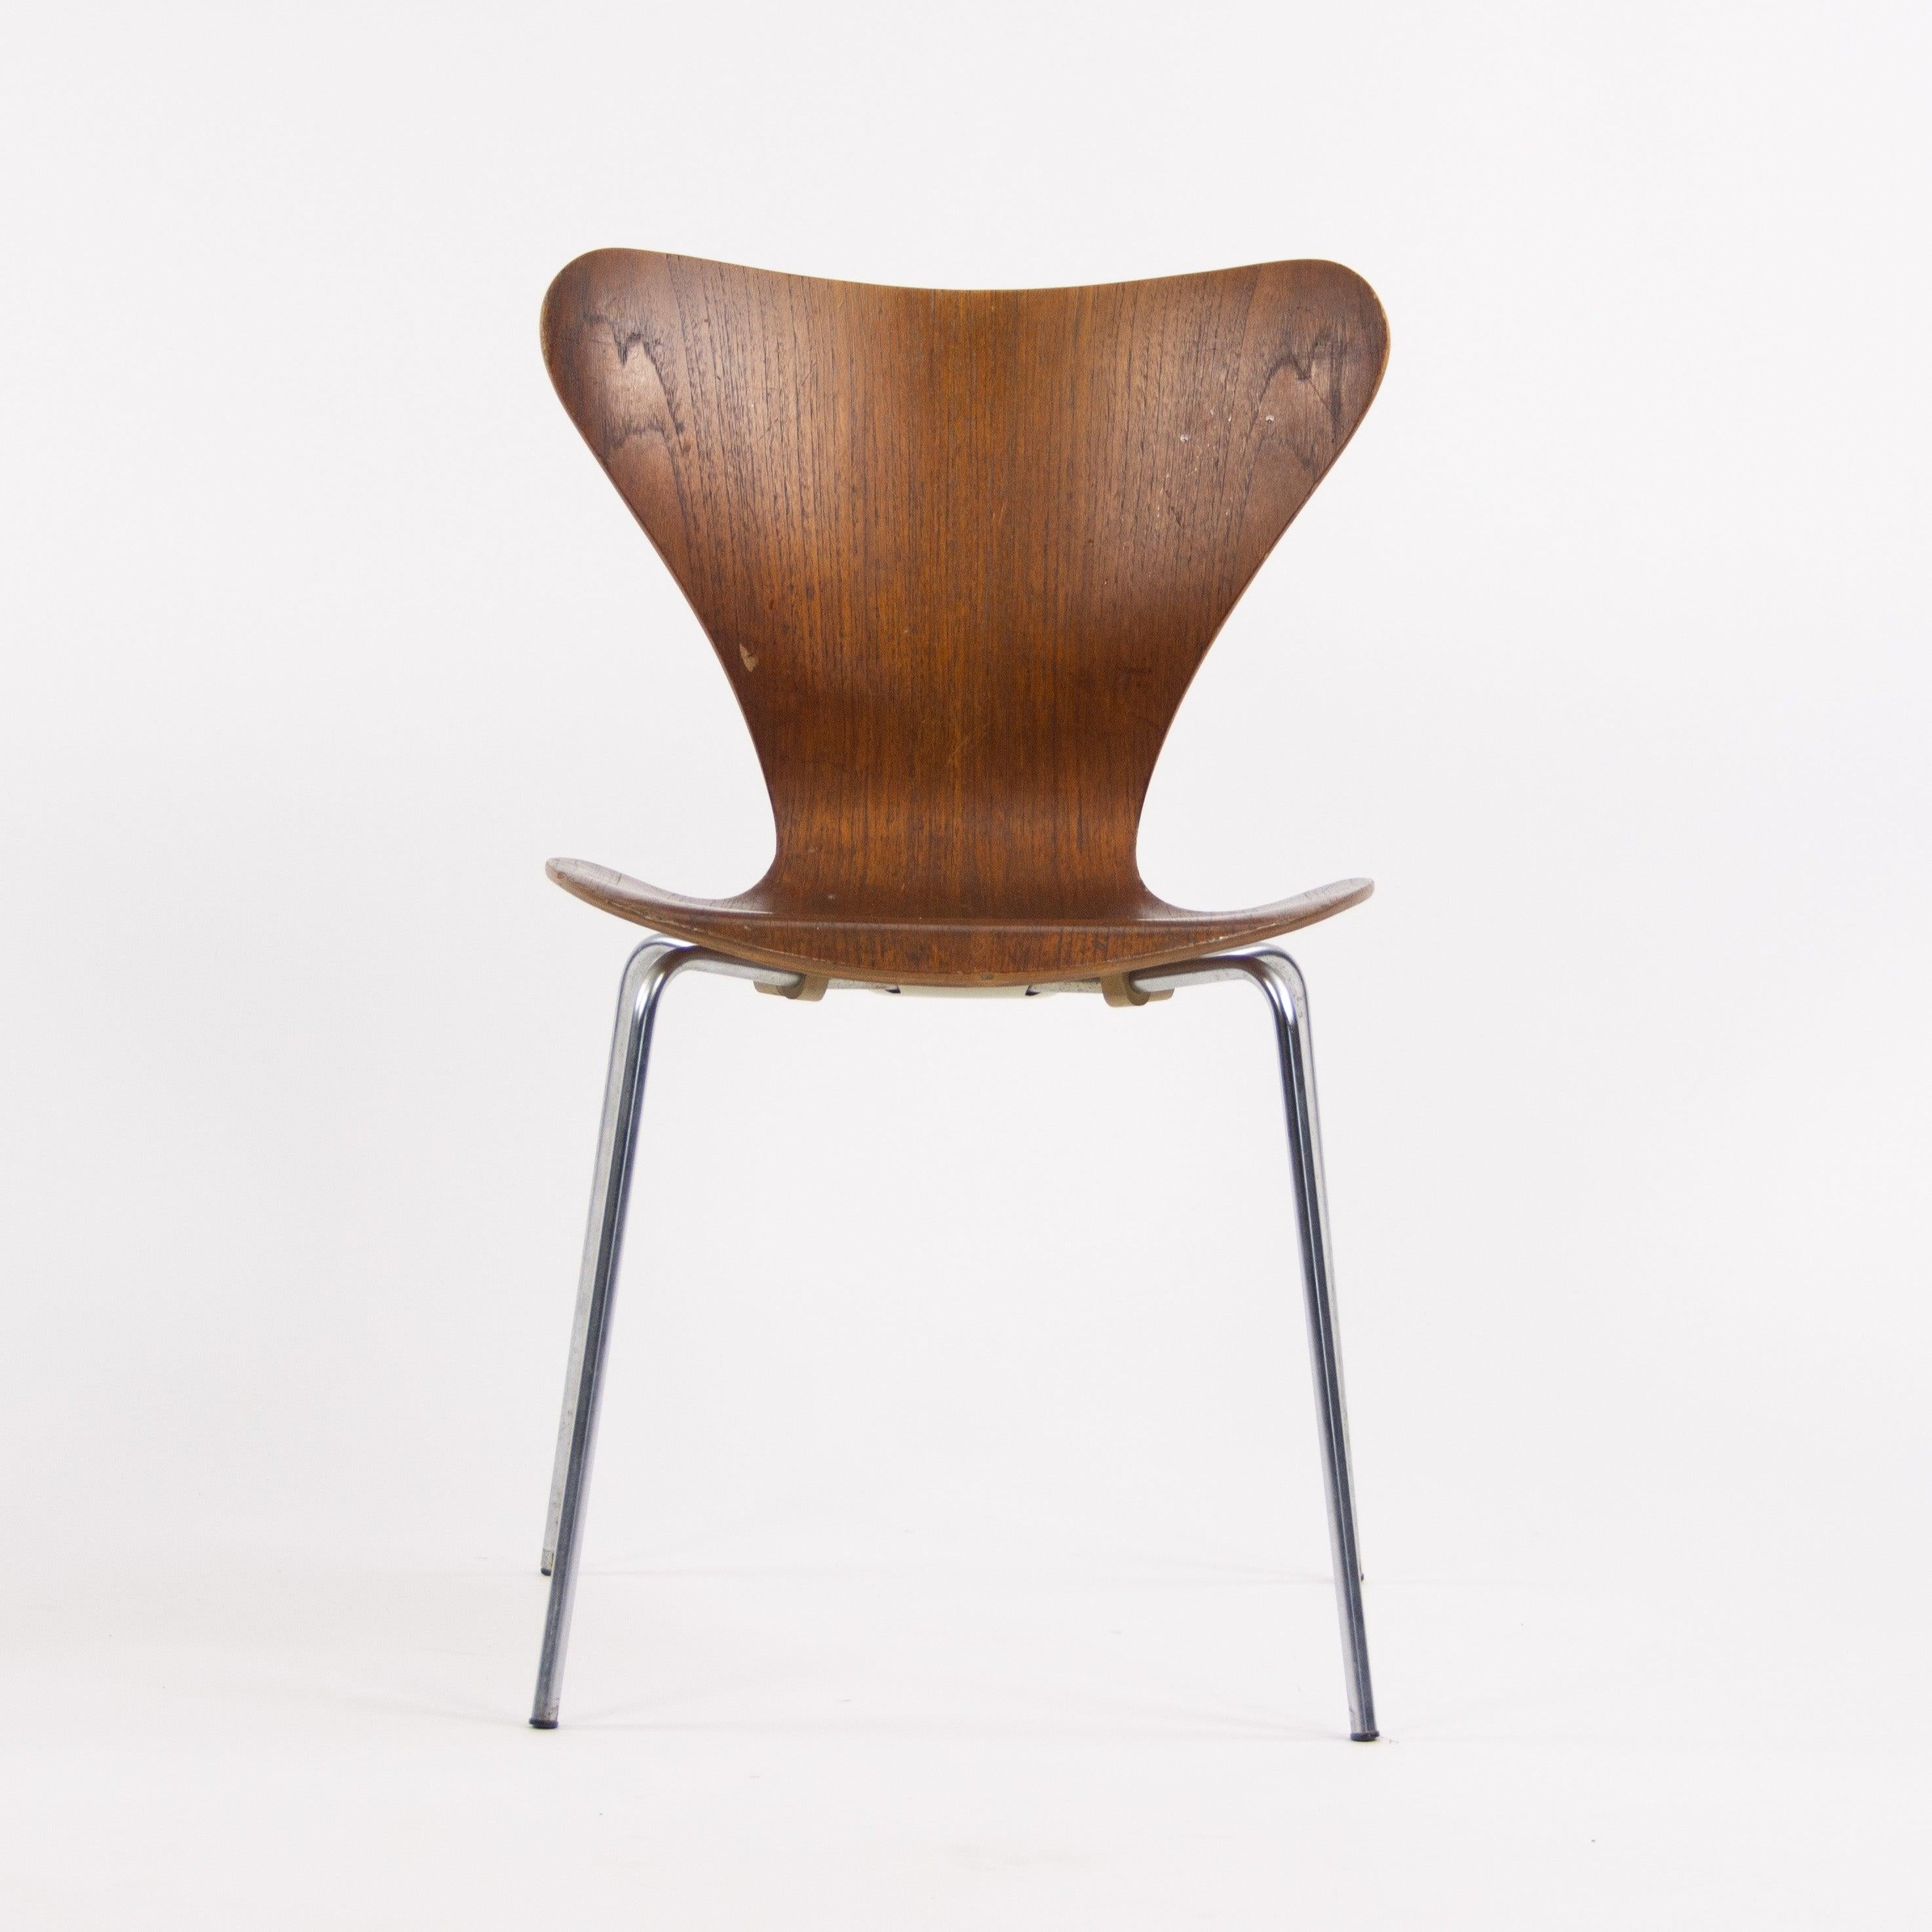 Zum Verkauf angeboten wird ein Satz von vier Vintage Arne Jacobsen Serie 7 Stühle mit Teakholz Finish. Diese Exemplare wurden von Fritz Hansen in den 1960er Jahren hergestellt und sind fantastische Originalstücke.

Die Stühle weisen einige